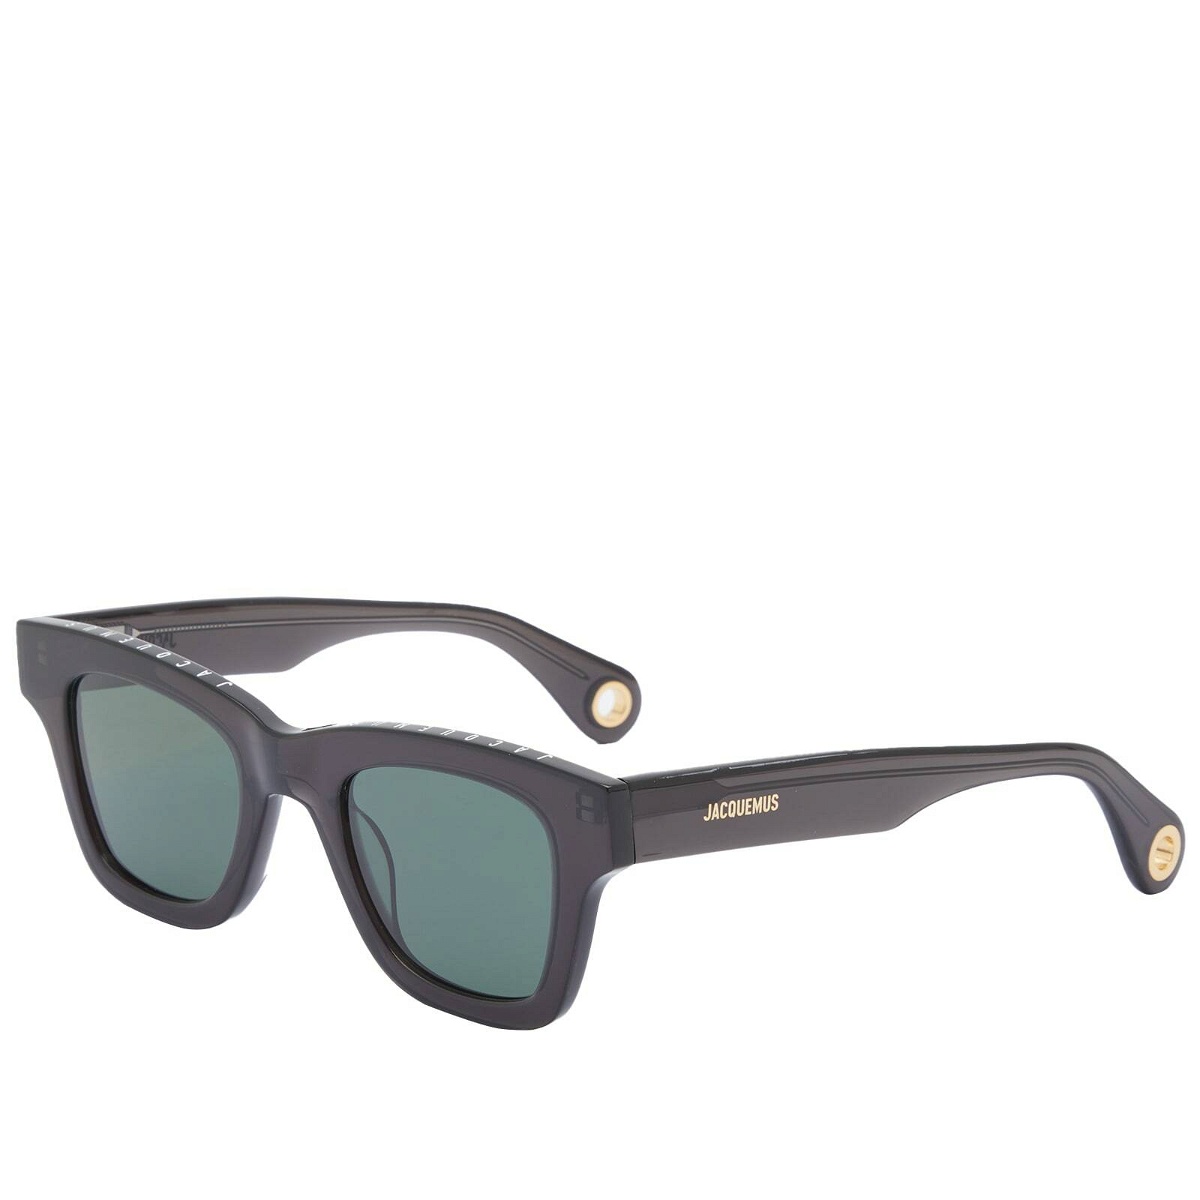 Jacquemus Men's Nocio Sunglasses in Multi-Black Jacquemus